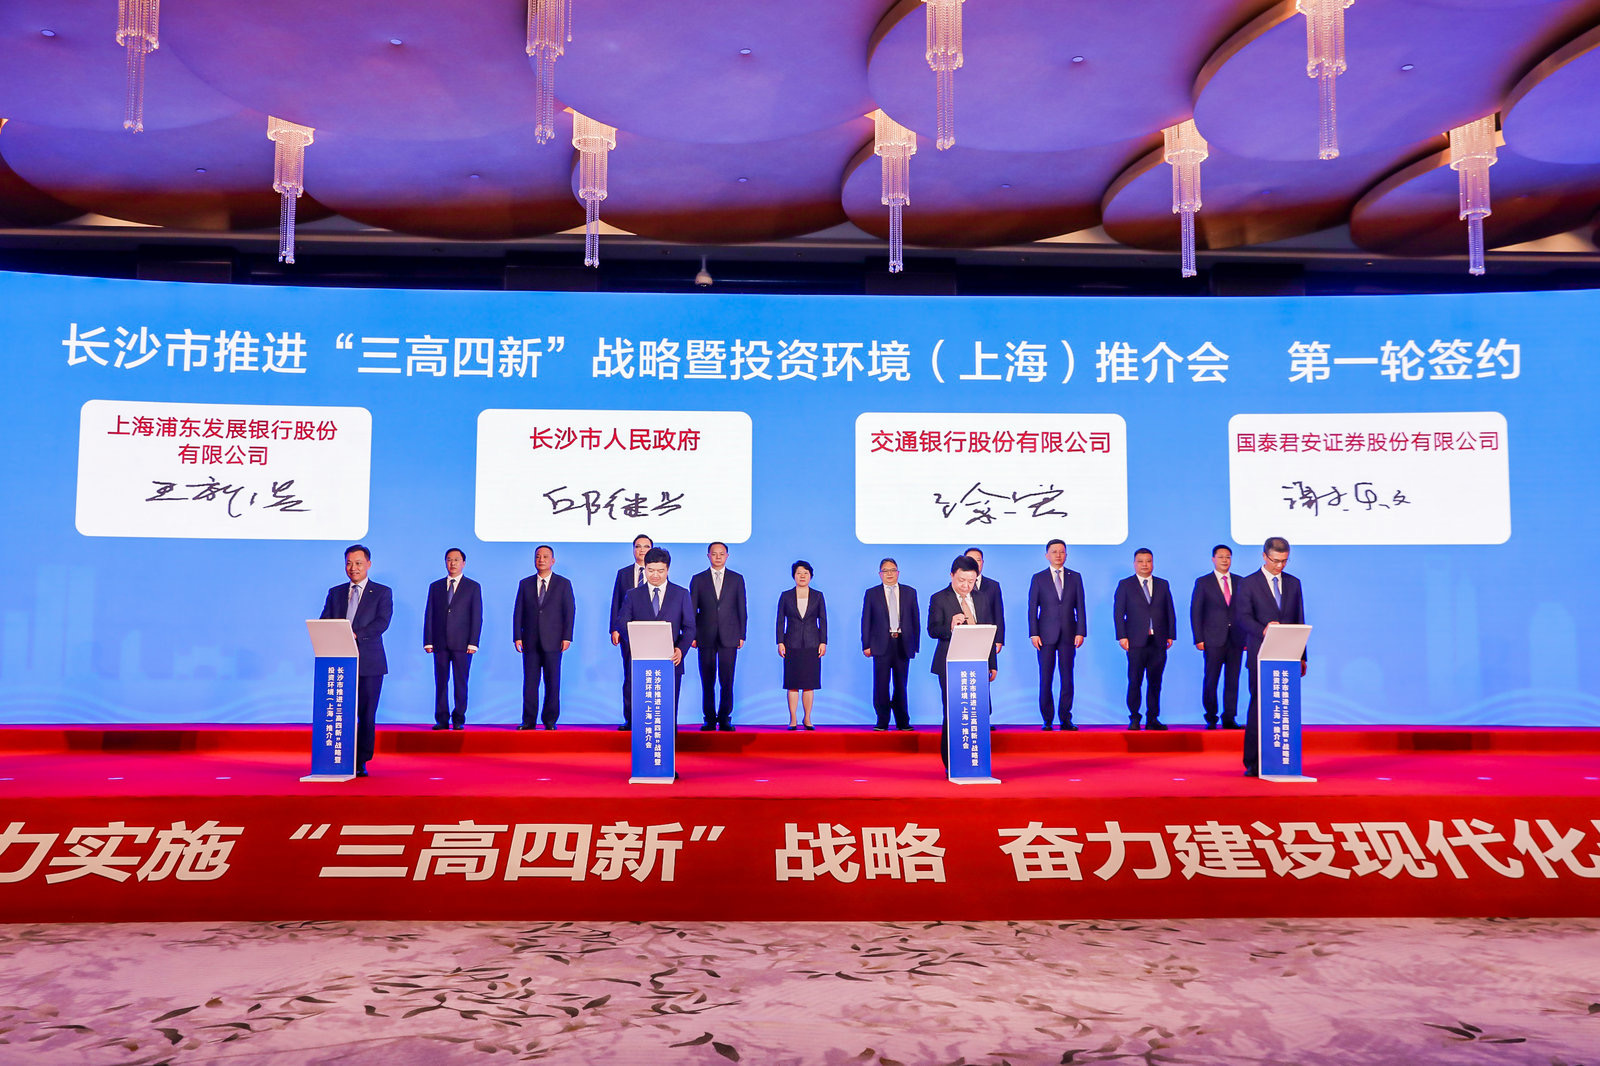 长沙市推进“三高四新”战略暨投资环境（上海）推介会现场。